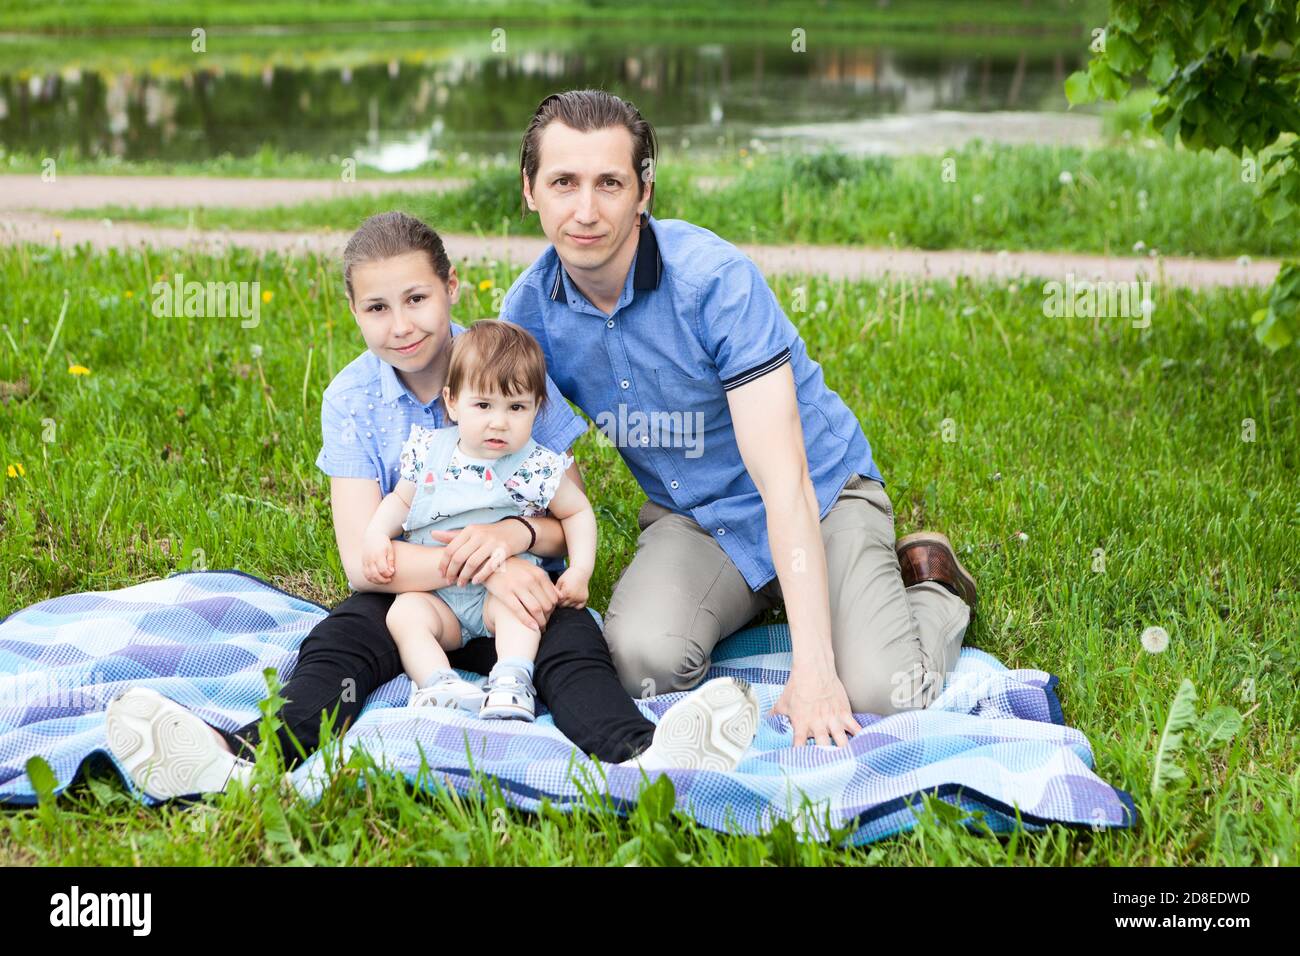 Singolo padre e due figlie seduti su coperta sul prato in un parco urbano, bambino e ragazza adolescente, ritratto all'aperto Foto Stock